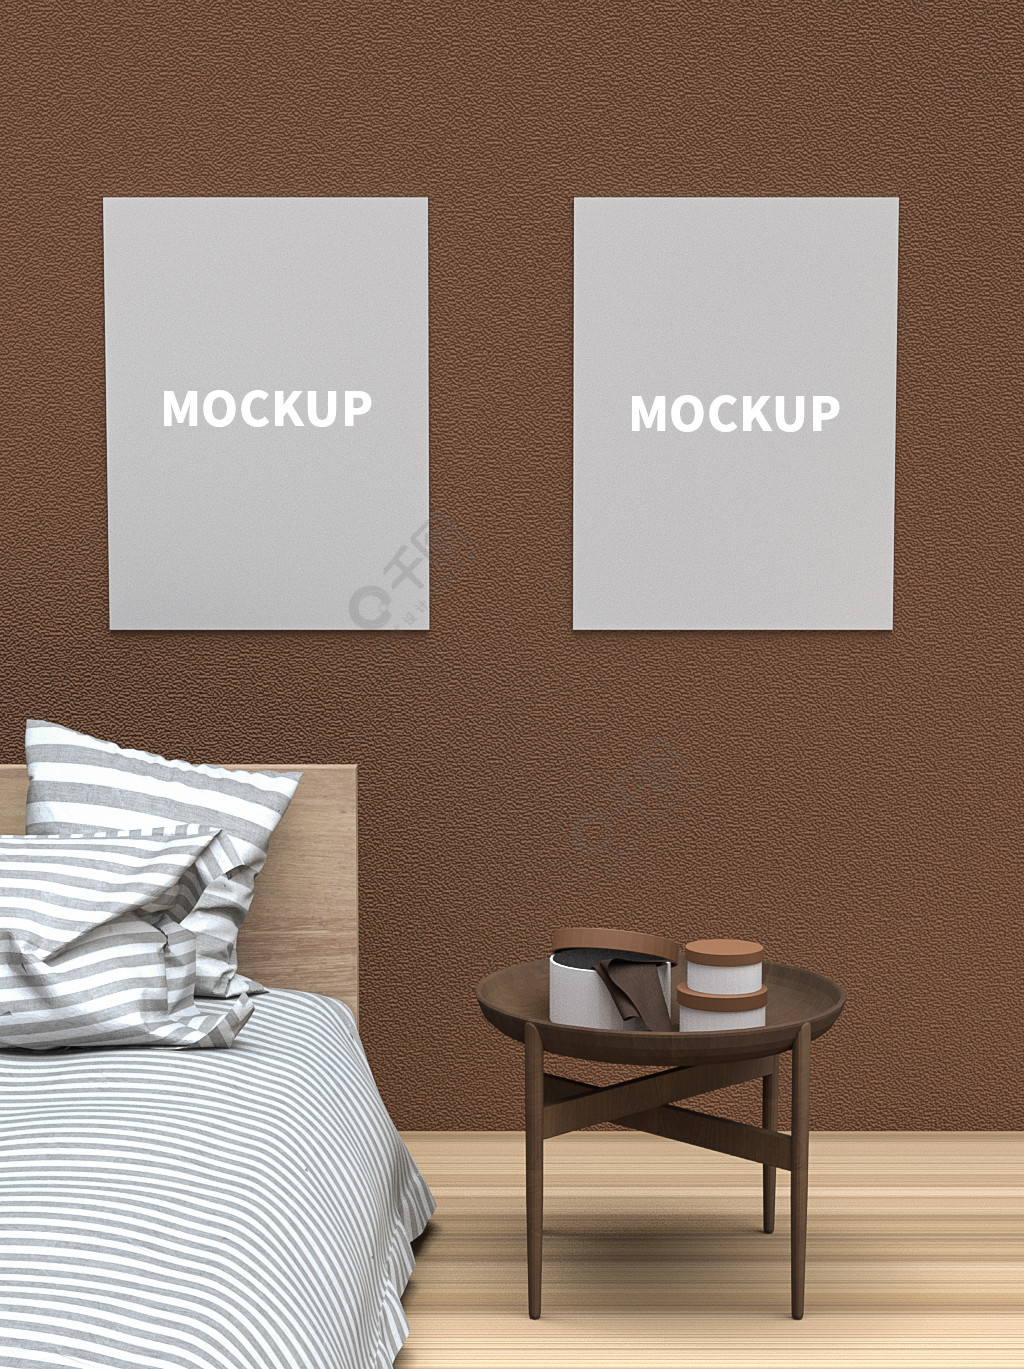 咖啡色室内卧室简约墙壁海报样机样机素材免费下载-千图样机www.